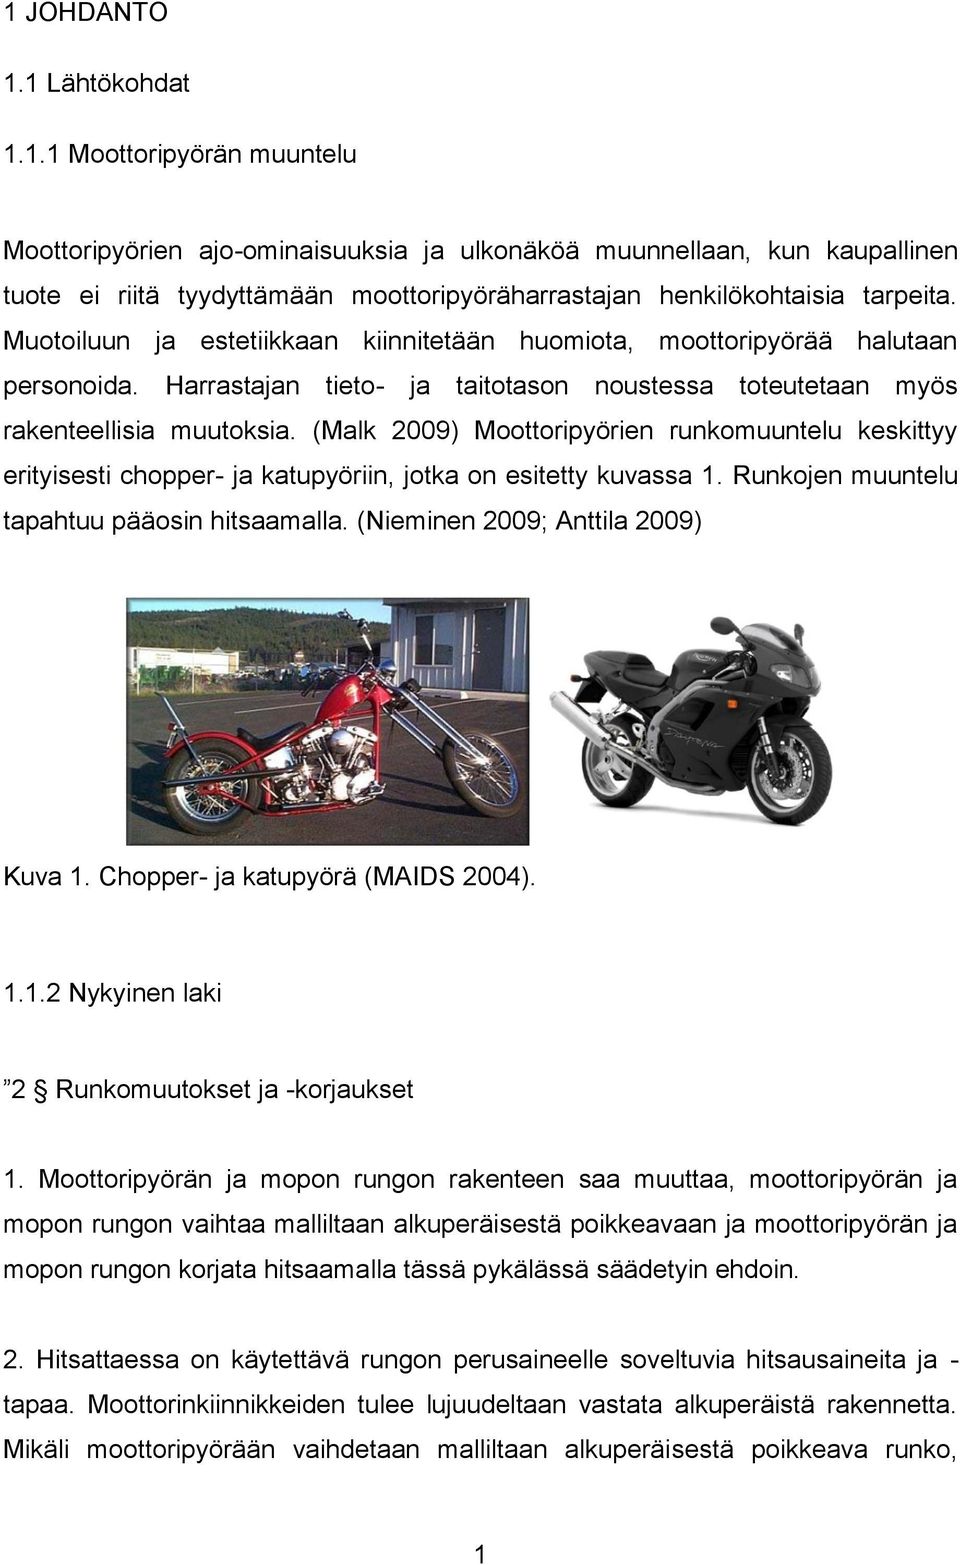 (Malk 2009) Moottoripyörien runkomuuntelu keskittyy erityisesti chopper- ja katupyöriin, jotka on esitetty kuvassa 1. Runkojen muuntelu tapahtuu pääosin hitsaamalla.